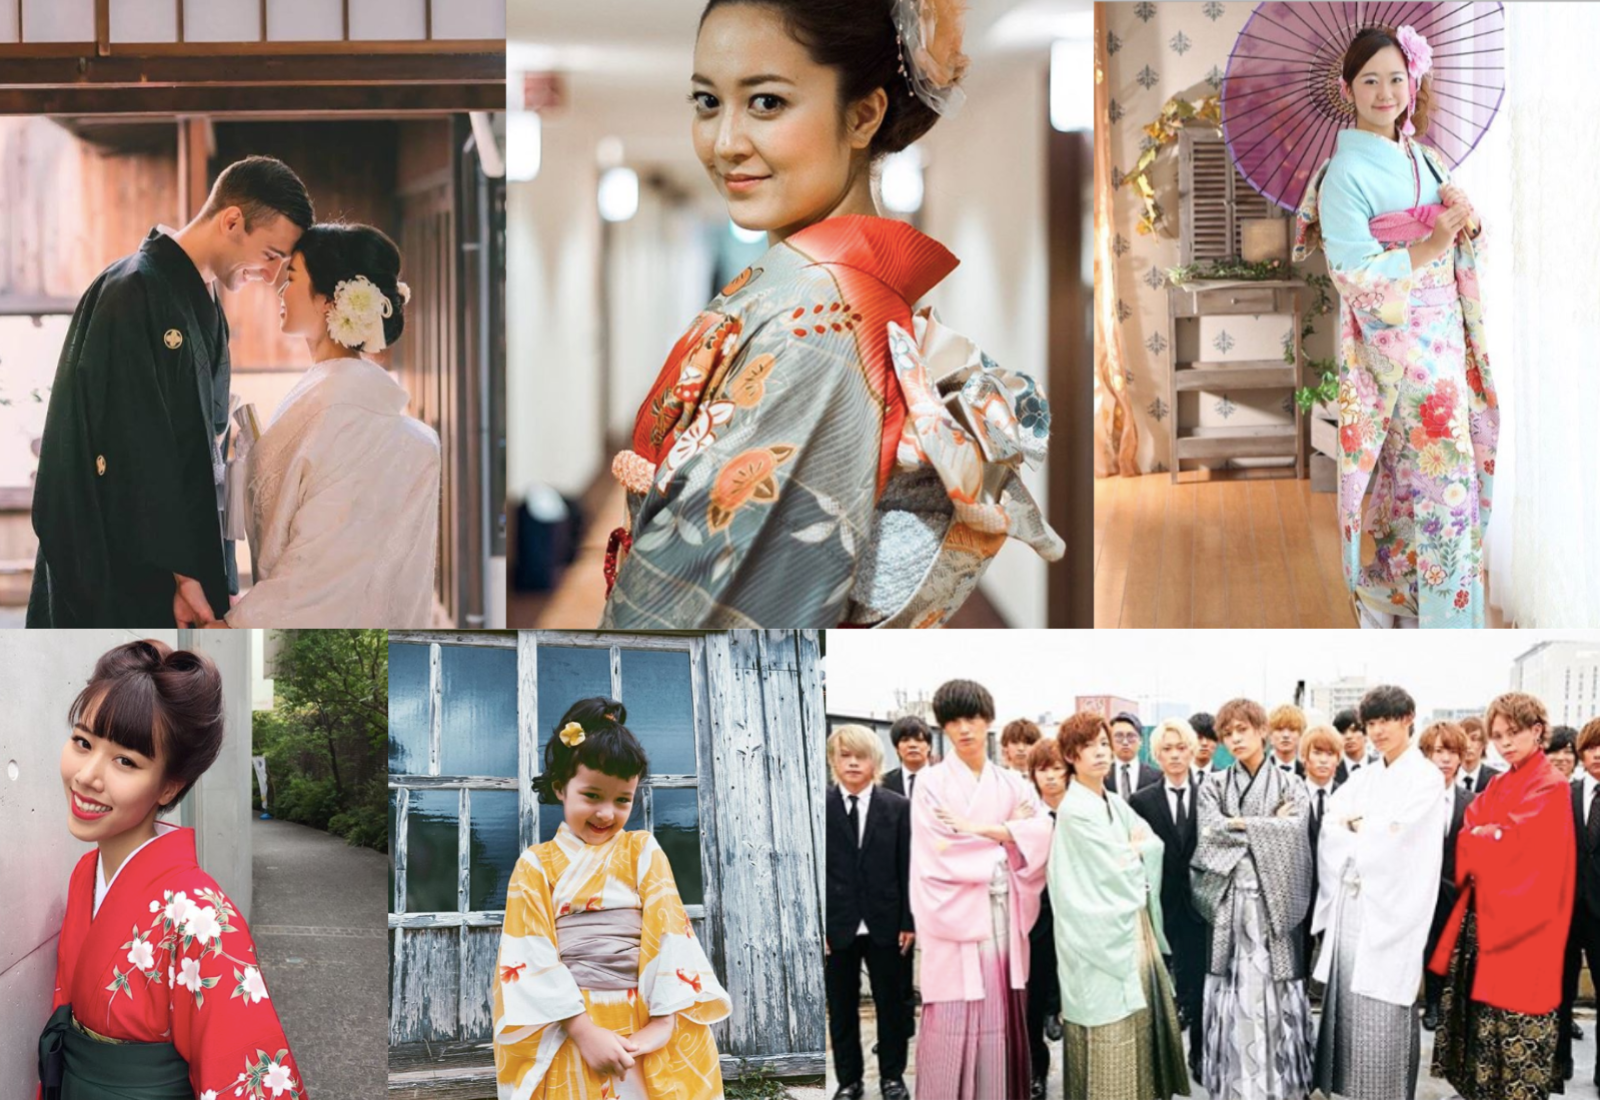 Japanese Women Share Stunning Photos In Their Kimonos After Kim Kardashian  Tries to Trademark 'Kimono' - Mogul